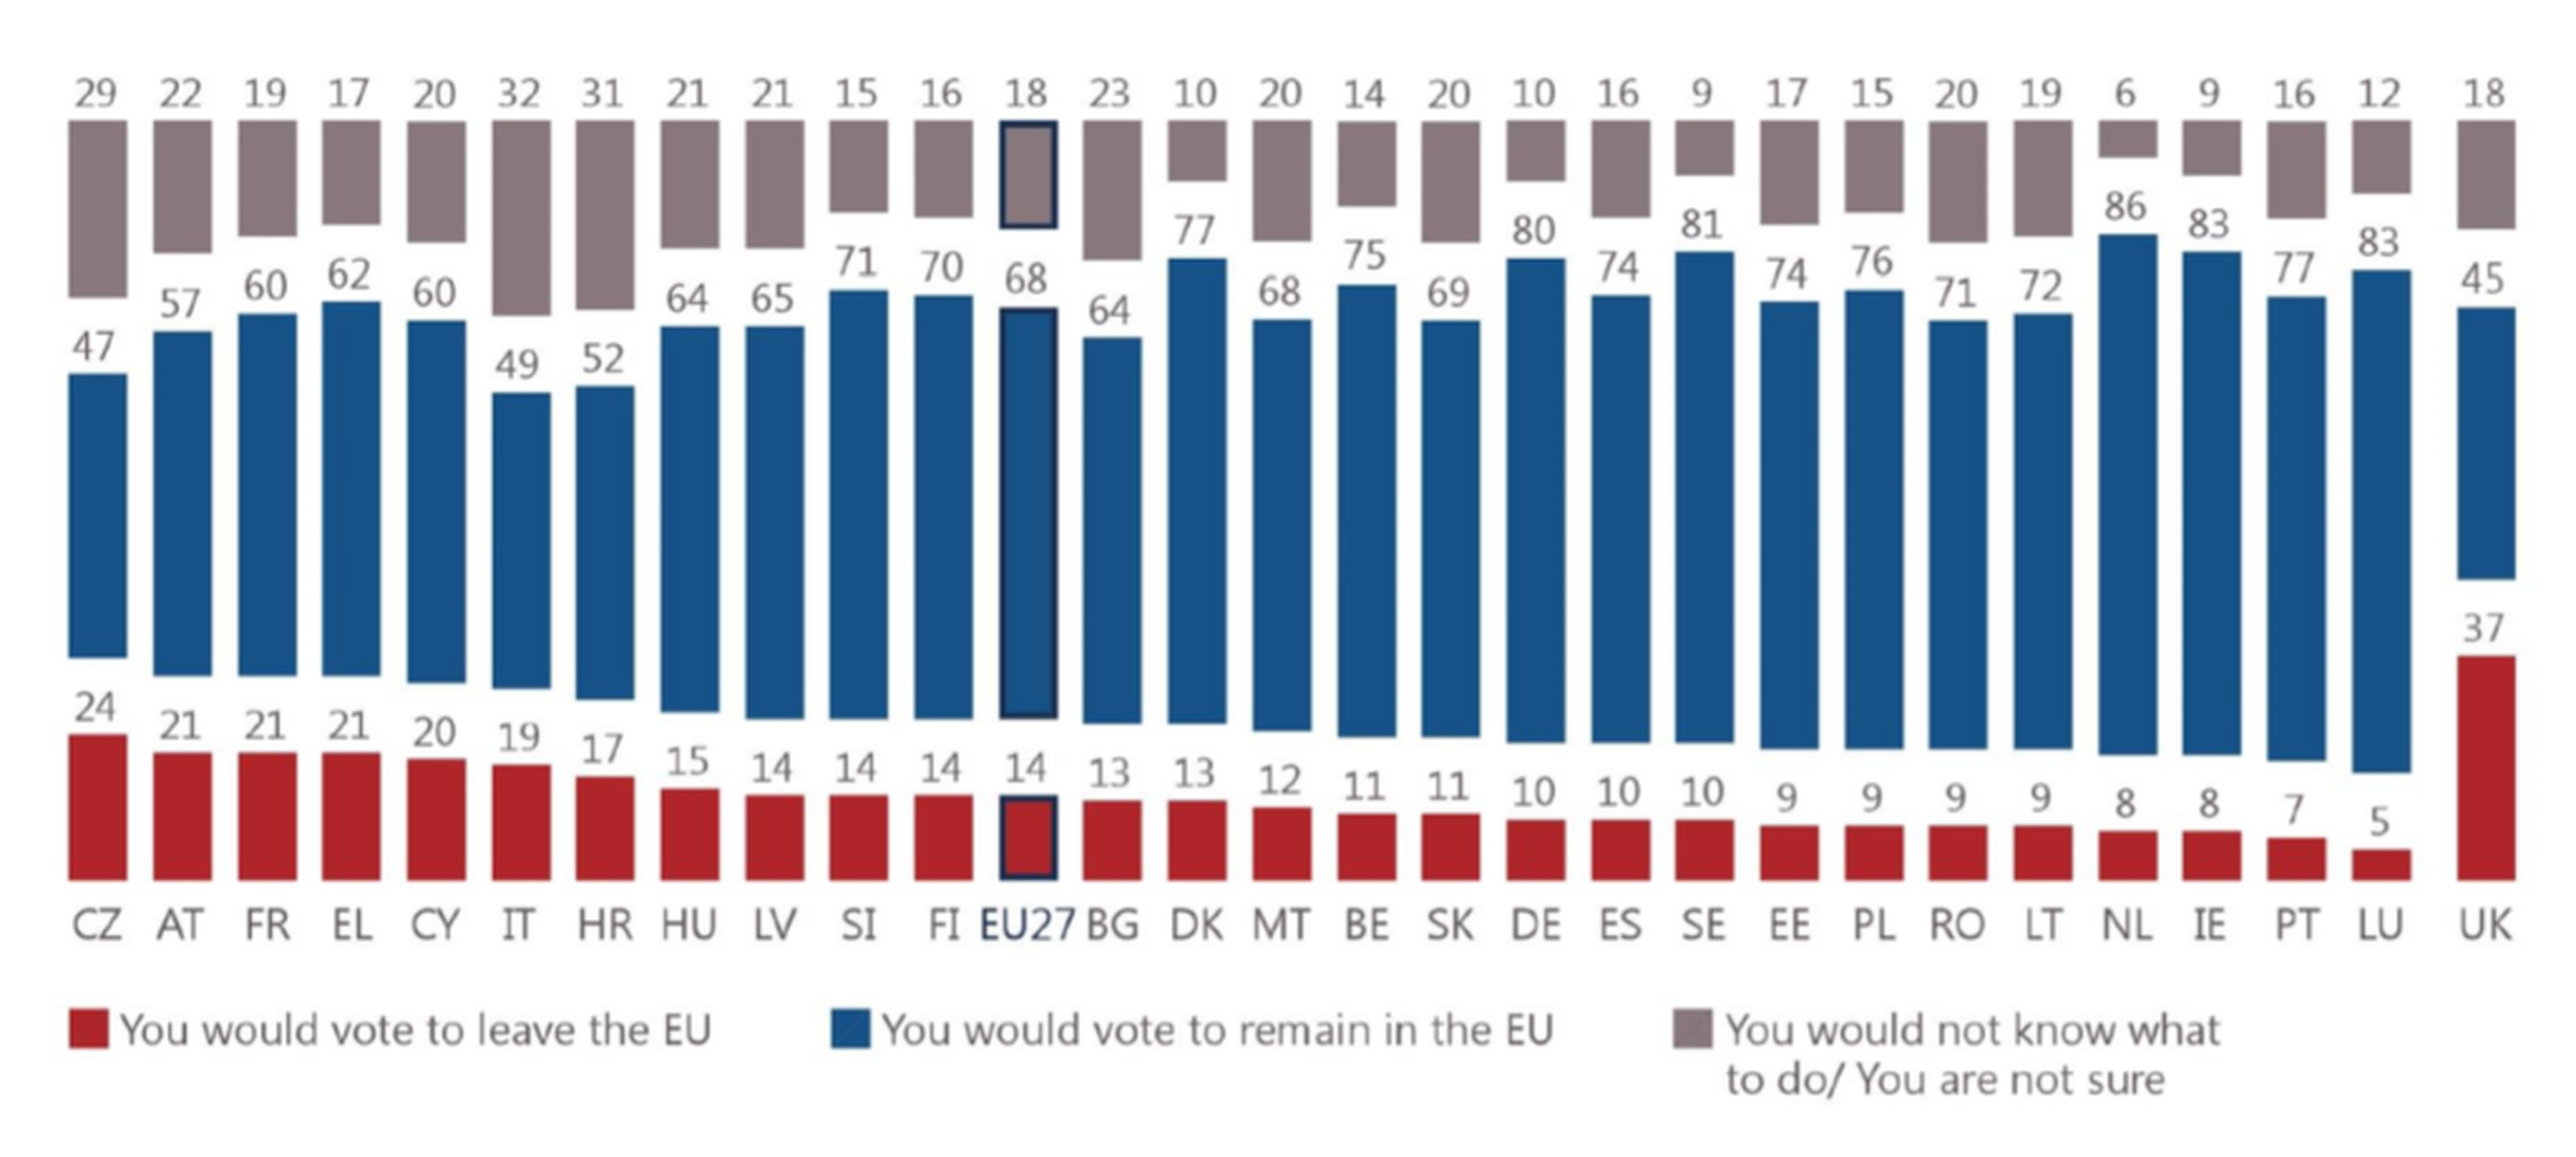 Qué votarían los ciudadanos de cada país miembro en un hipotético referéndum sobre la salida de la UE (Permanencia en azul y salida en rojo)